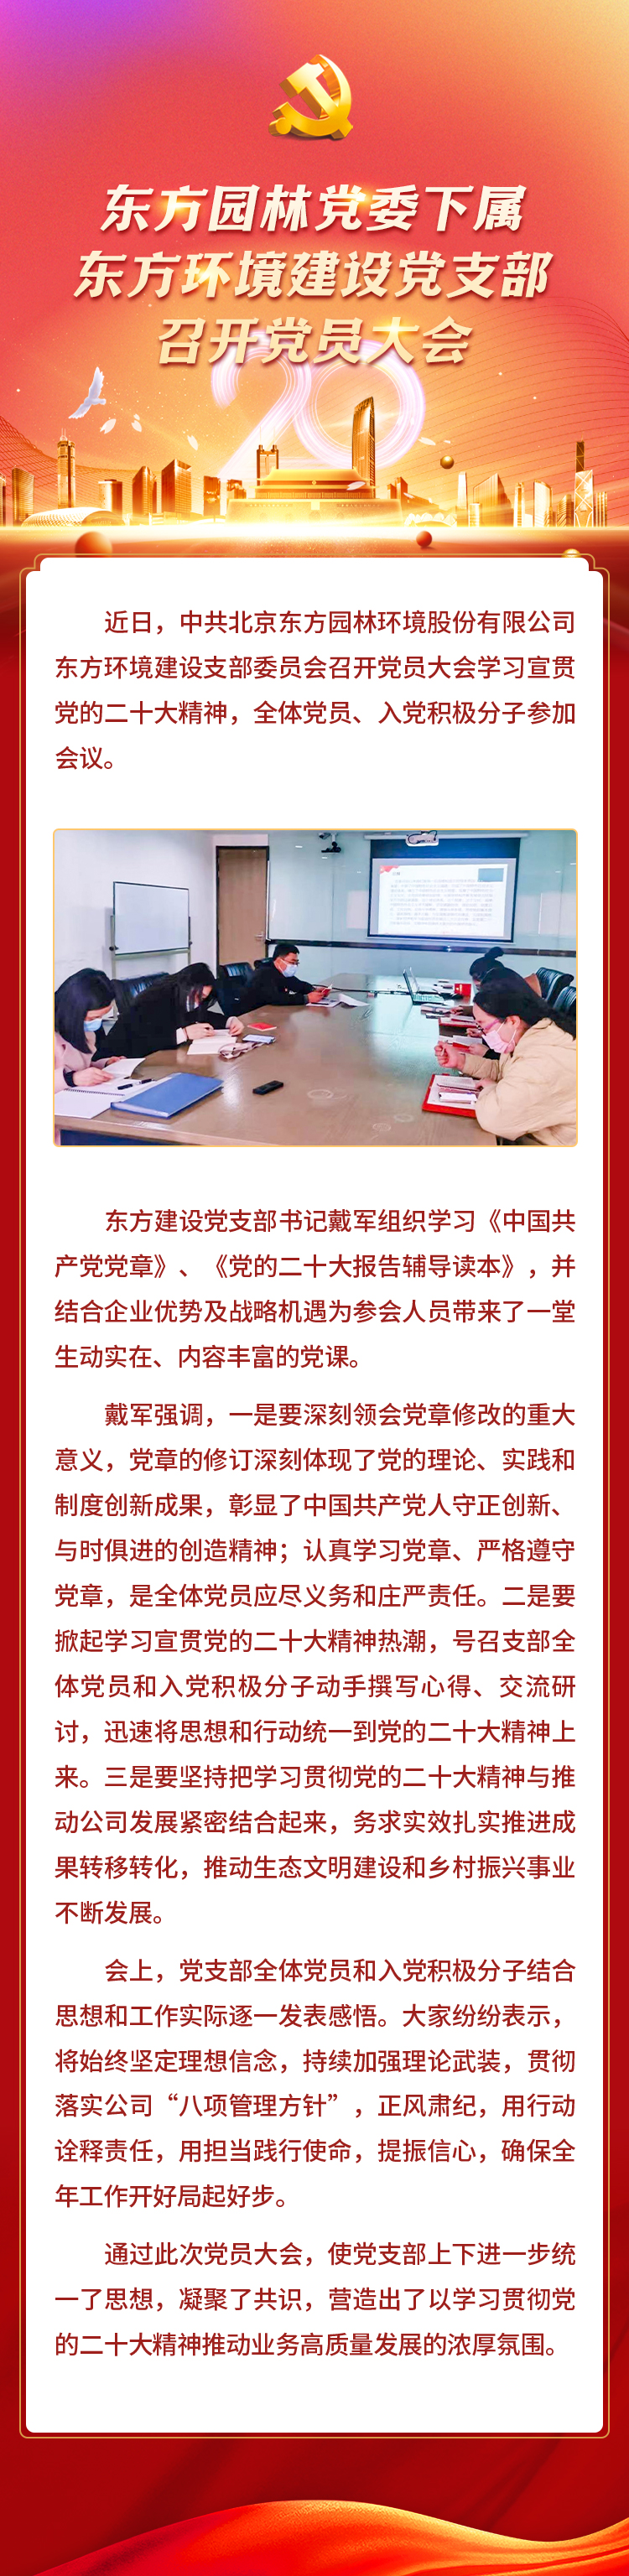 官网0112东方环境建设党支部召开党员大会-长图.jpg